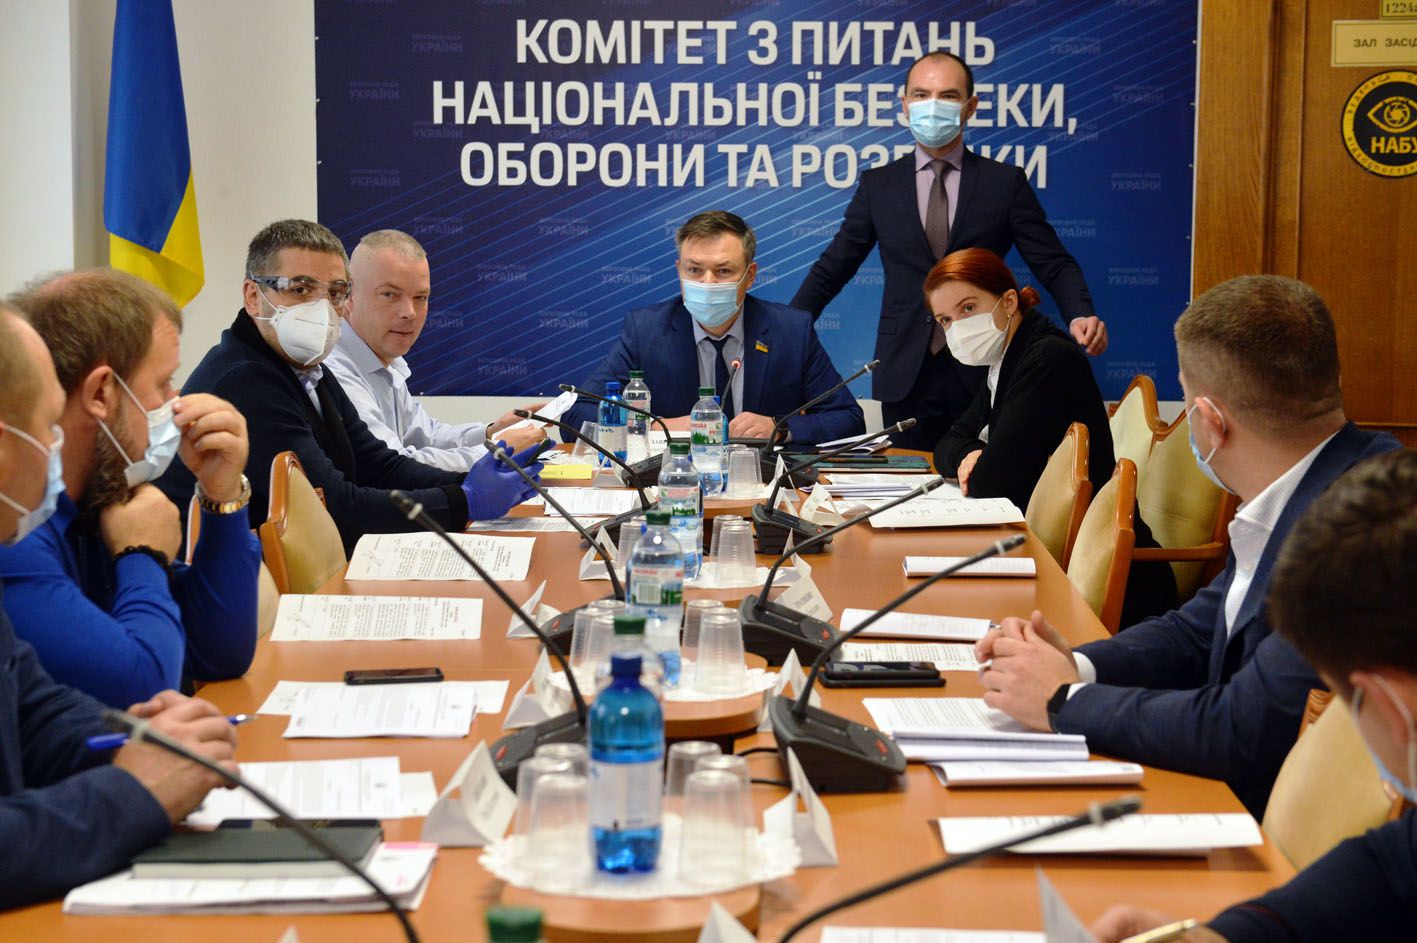 Відбулося засідання Комітету Верховної Ради України з питань національної безпеки, оборони та розвідки